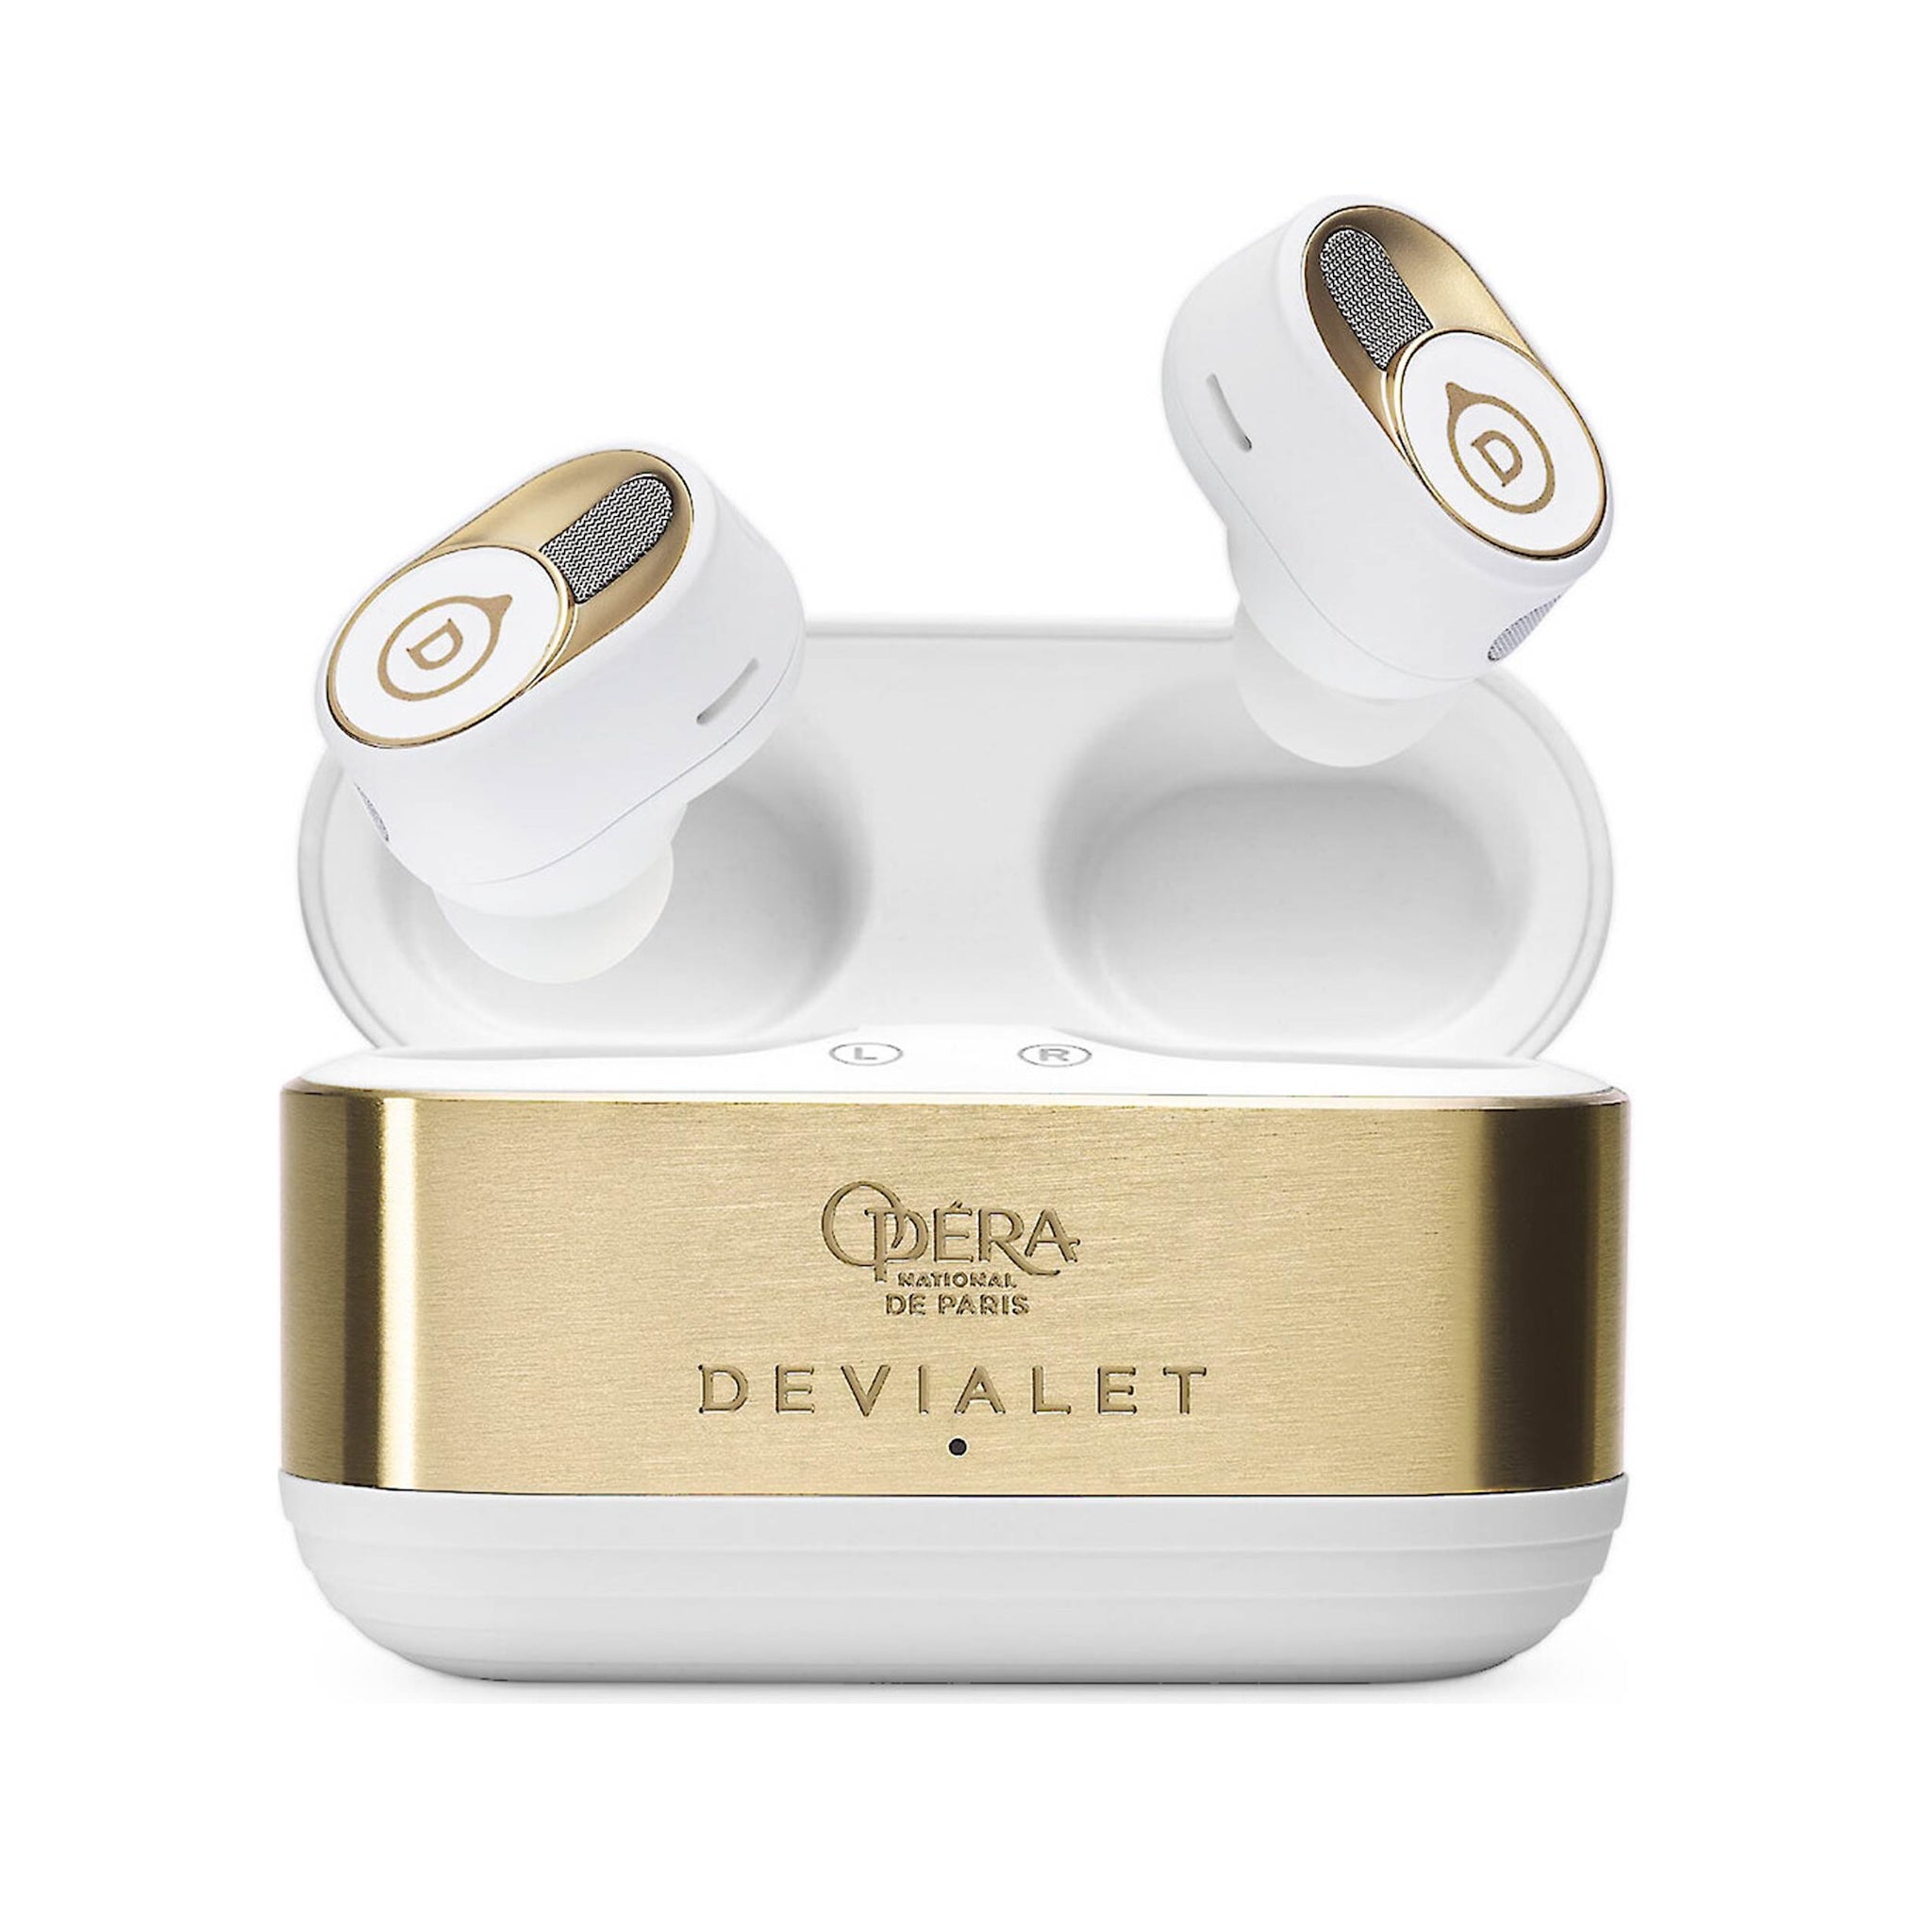 Devialet Gemini II - True Wireless Earbuds, Devialet, Earbuds - AVStore.in